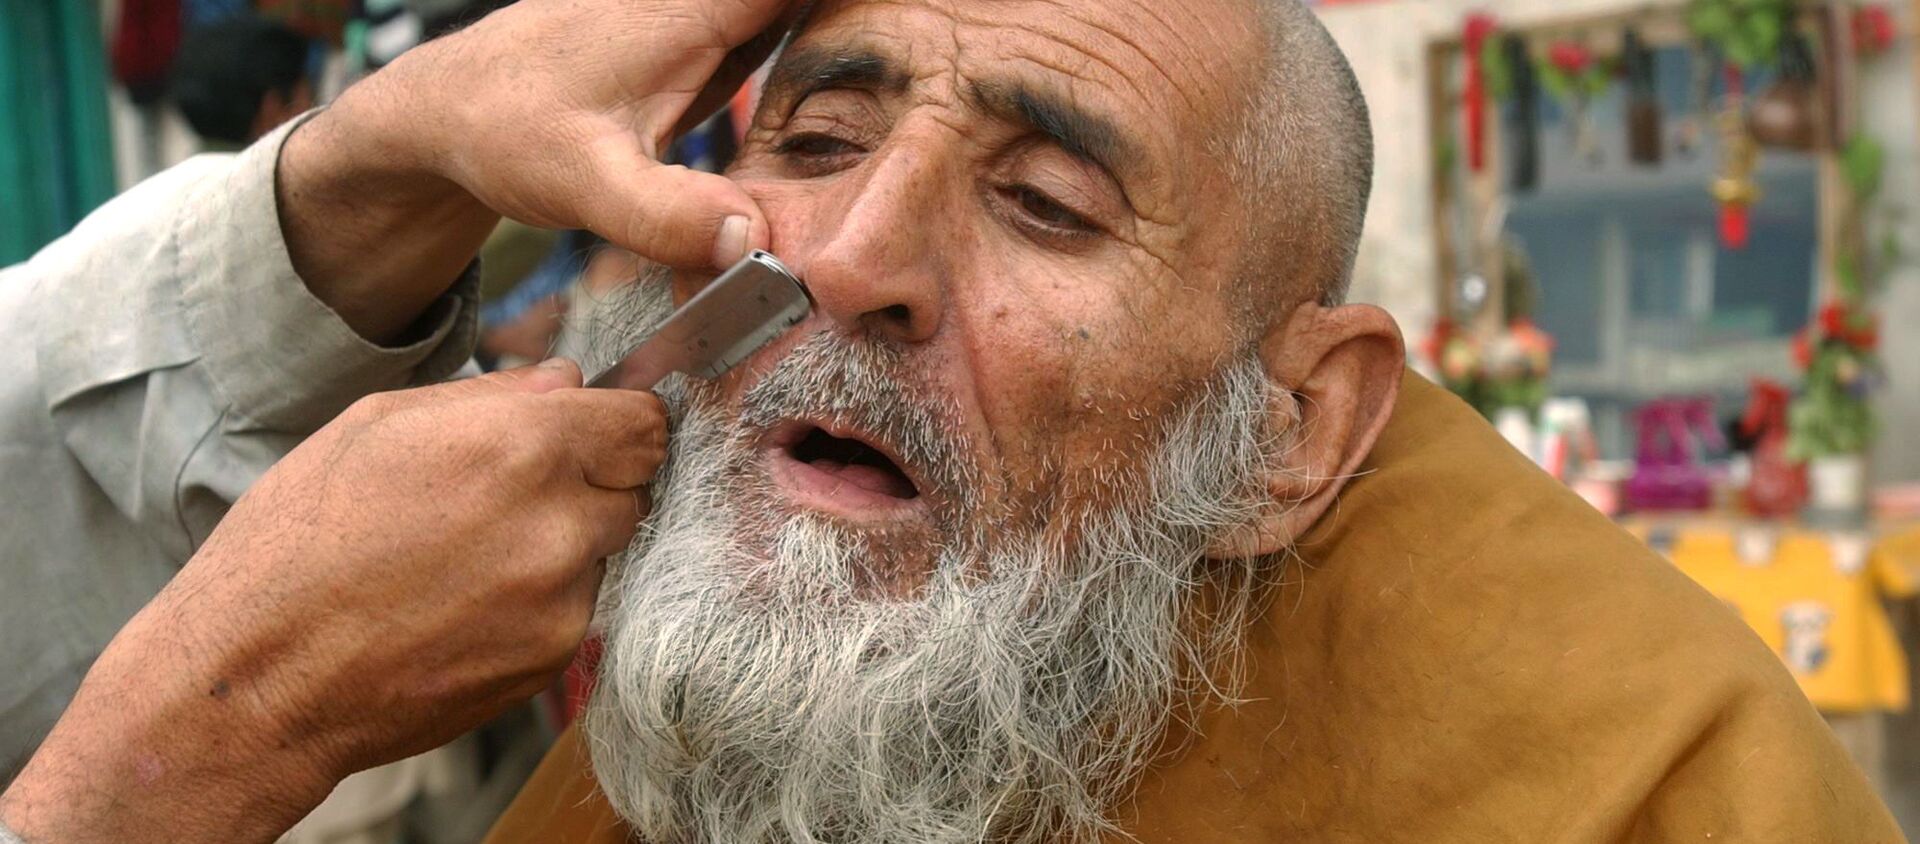 آرایشگر خیابانی در جلال آباد سال ۲۰۰۶ مشتری خود را اصلاح می کند - اسپوتنیک ایران  , 1920, 27.09.2021